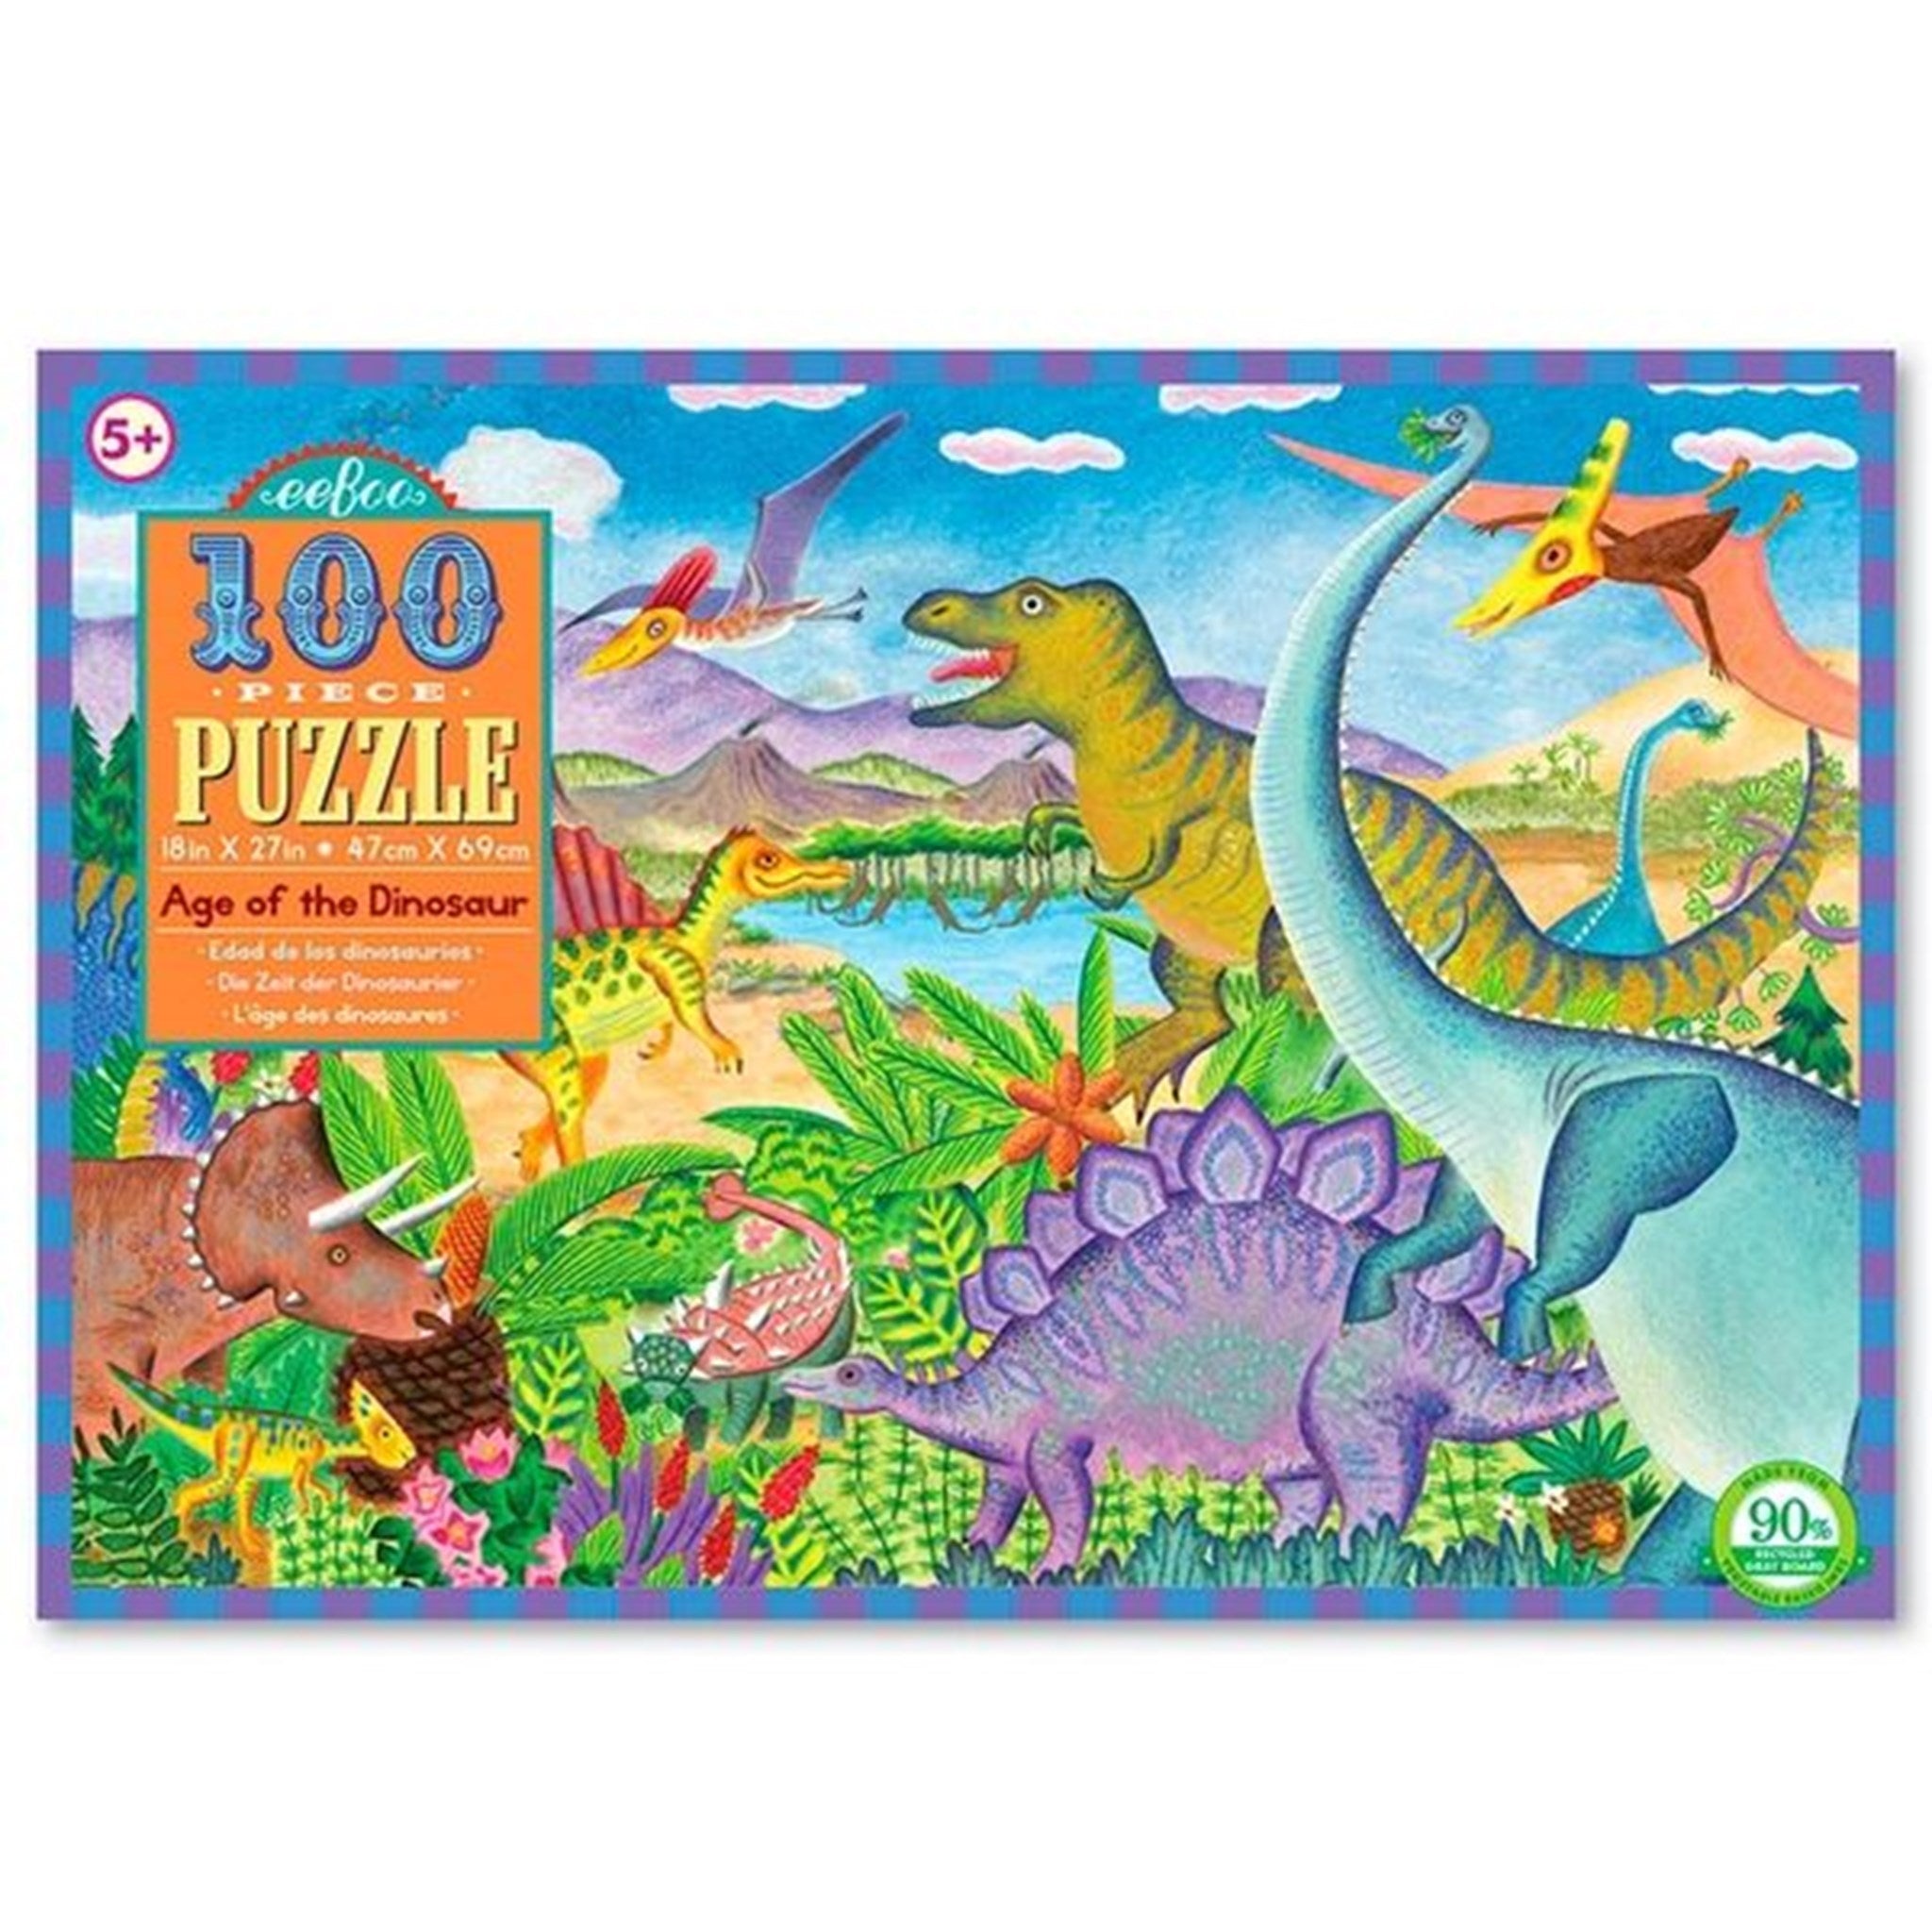 Eeboo Puzzle 100 Pieces - Dinosaurs